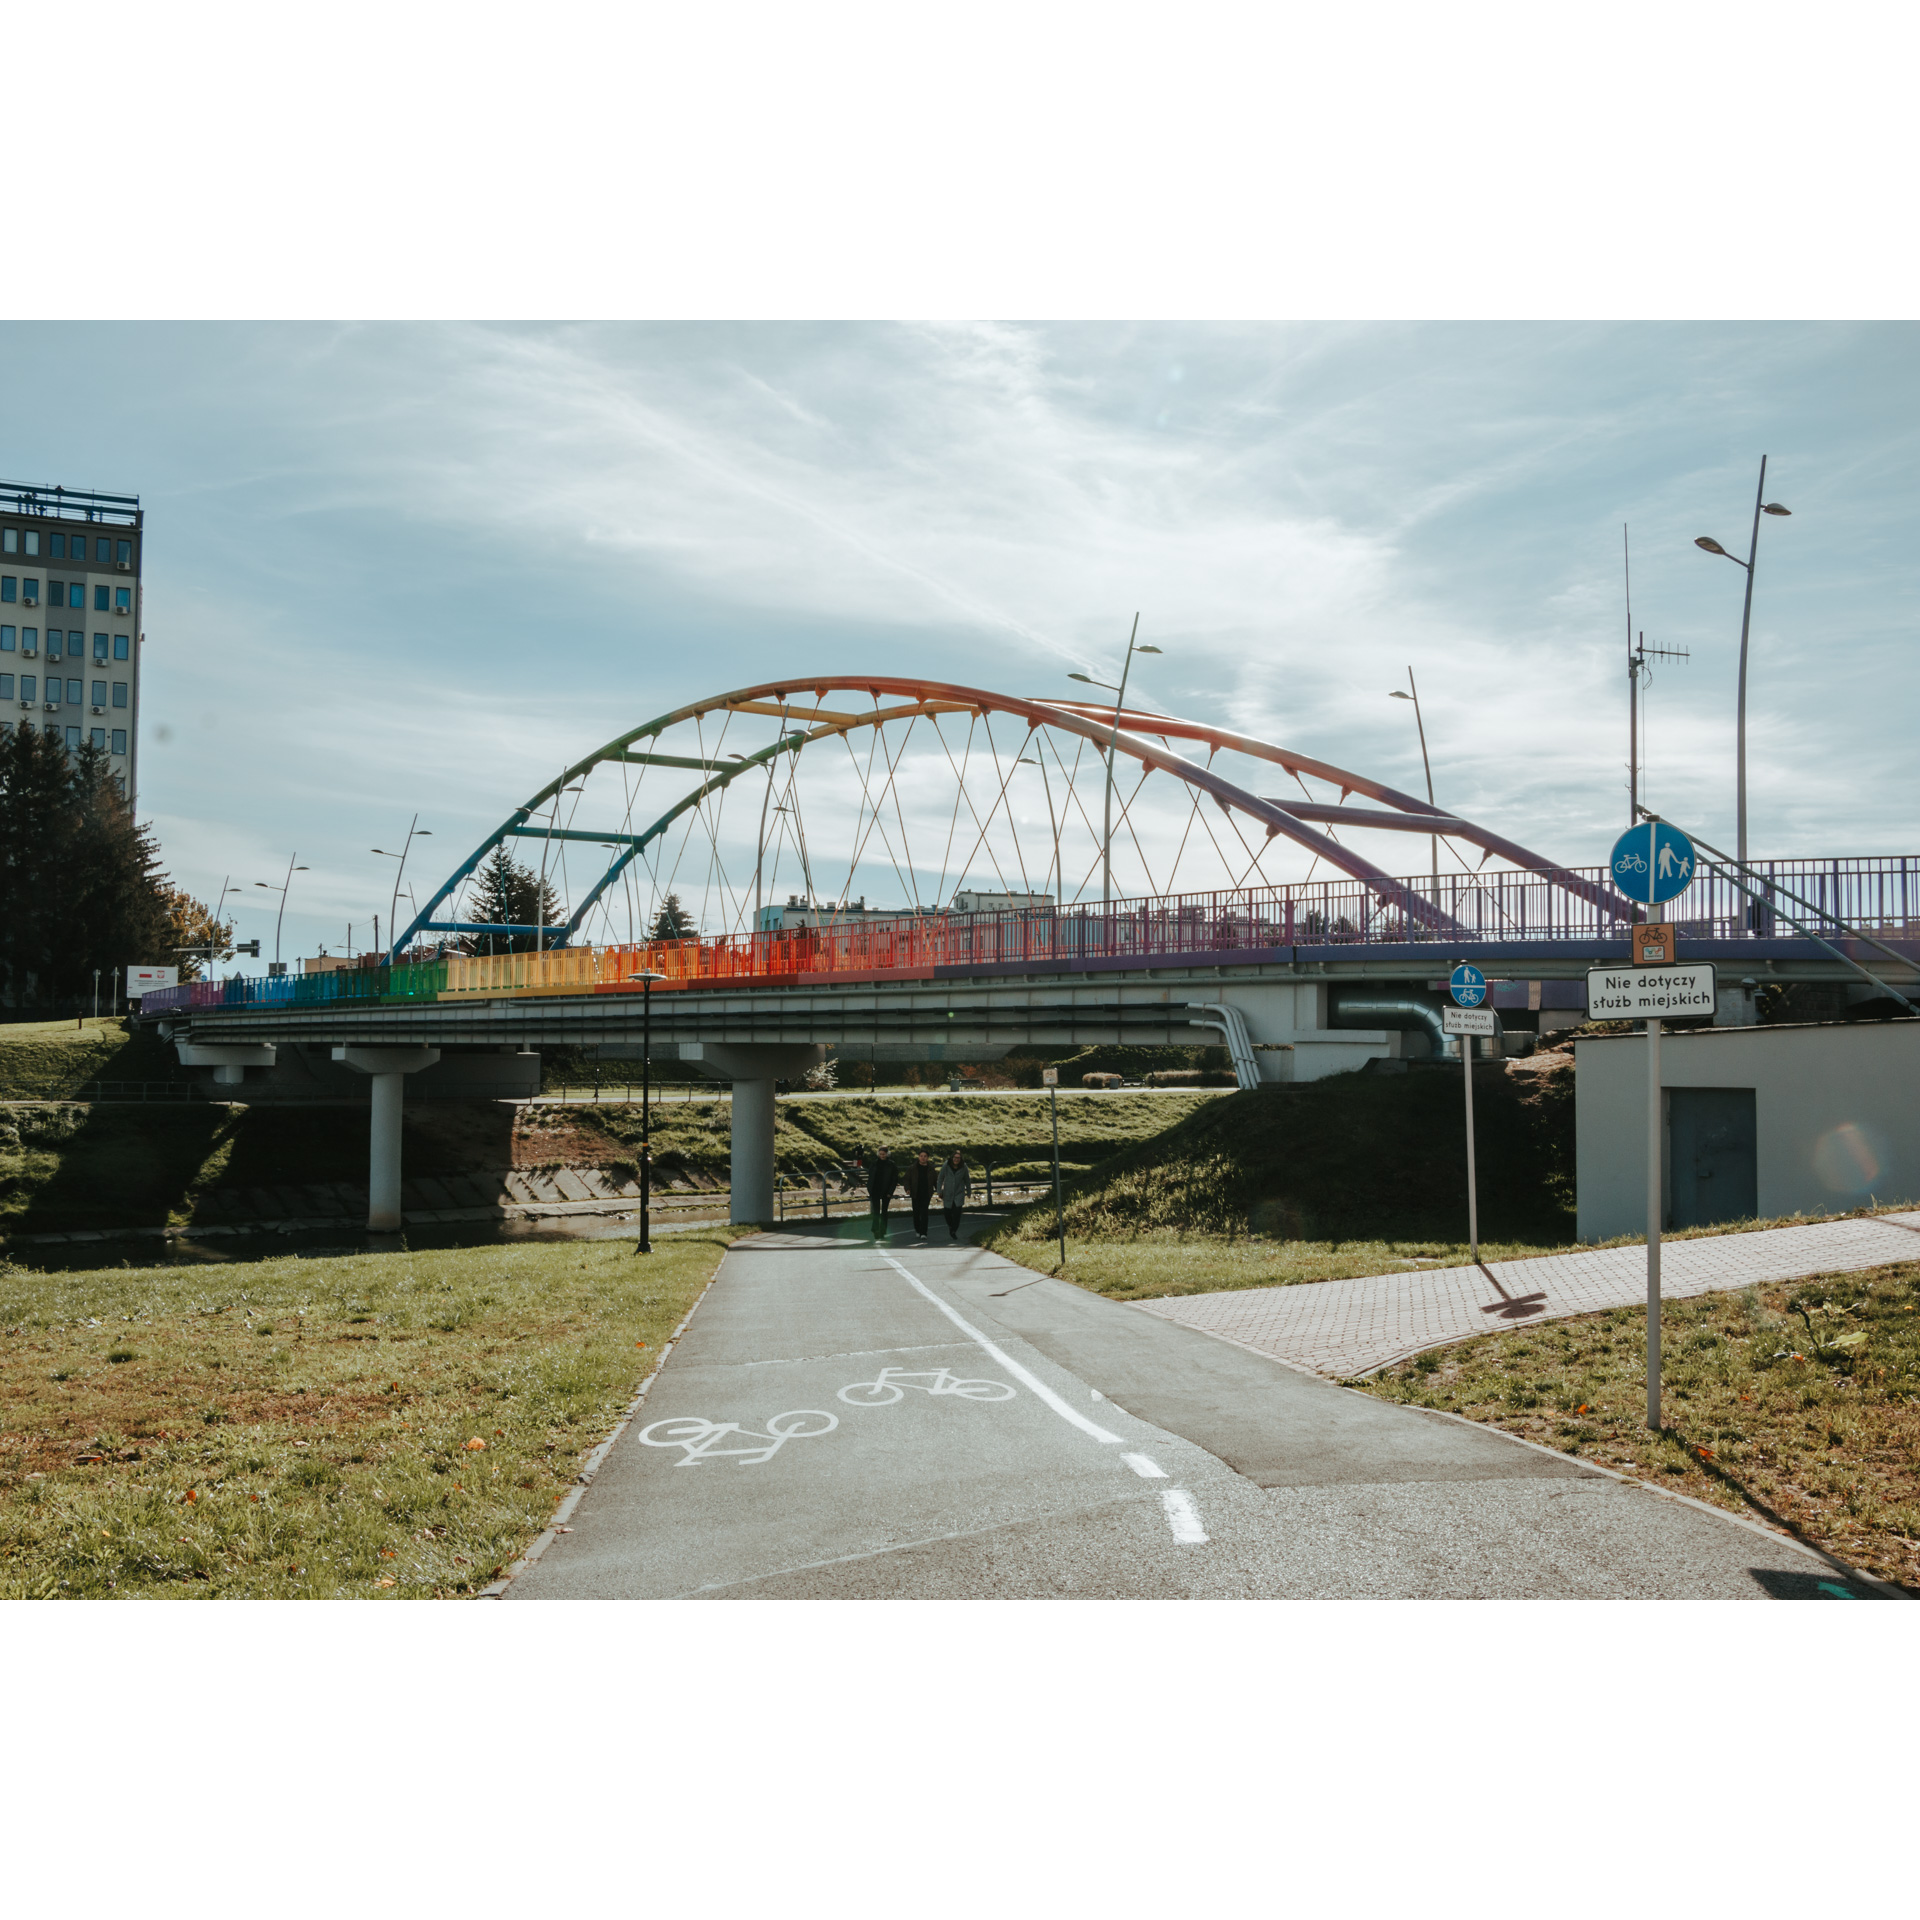 Ścieżka dla pieszych i rowerzystów w tle tęczowy most z półokrągłą konstrukcją